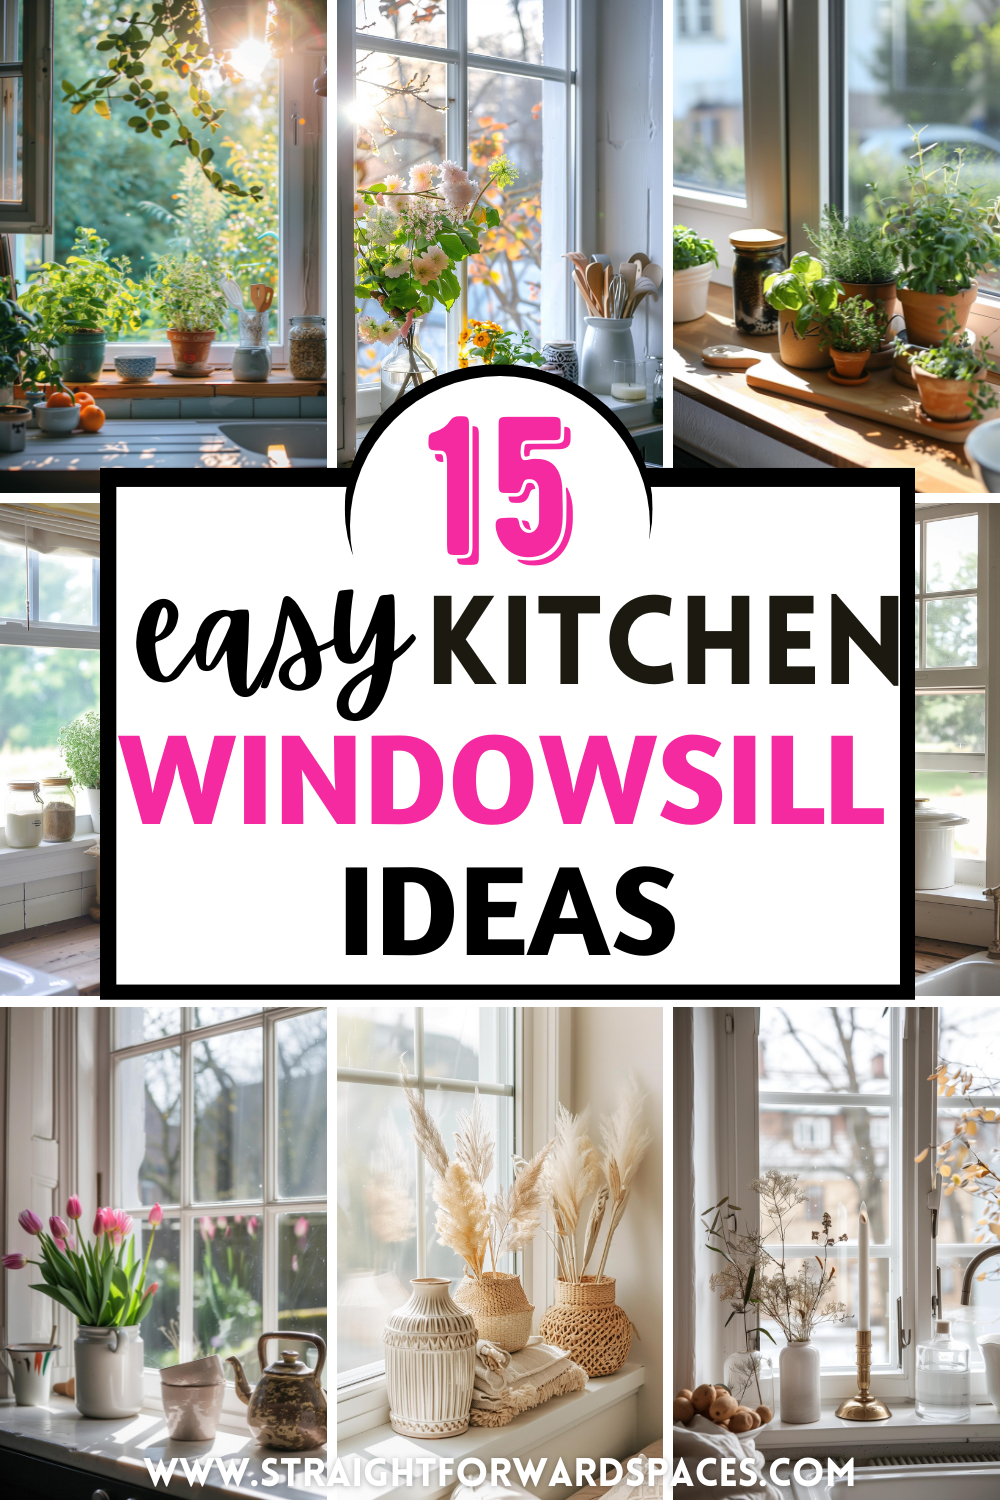 window sill decor kitchen ideas